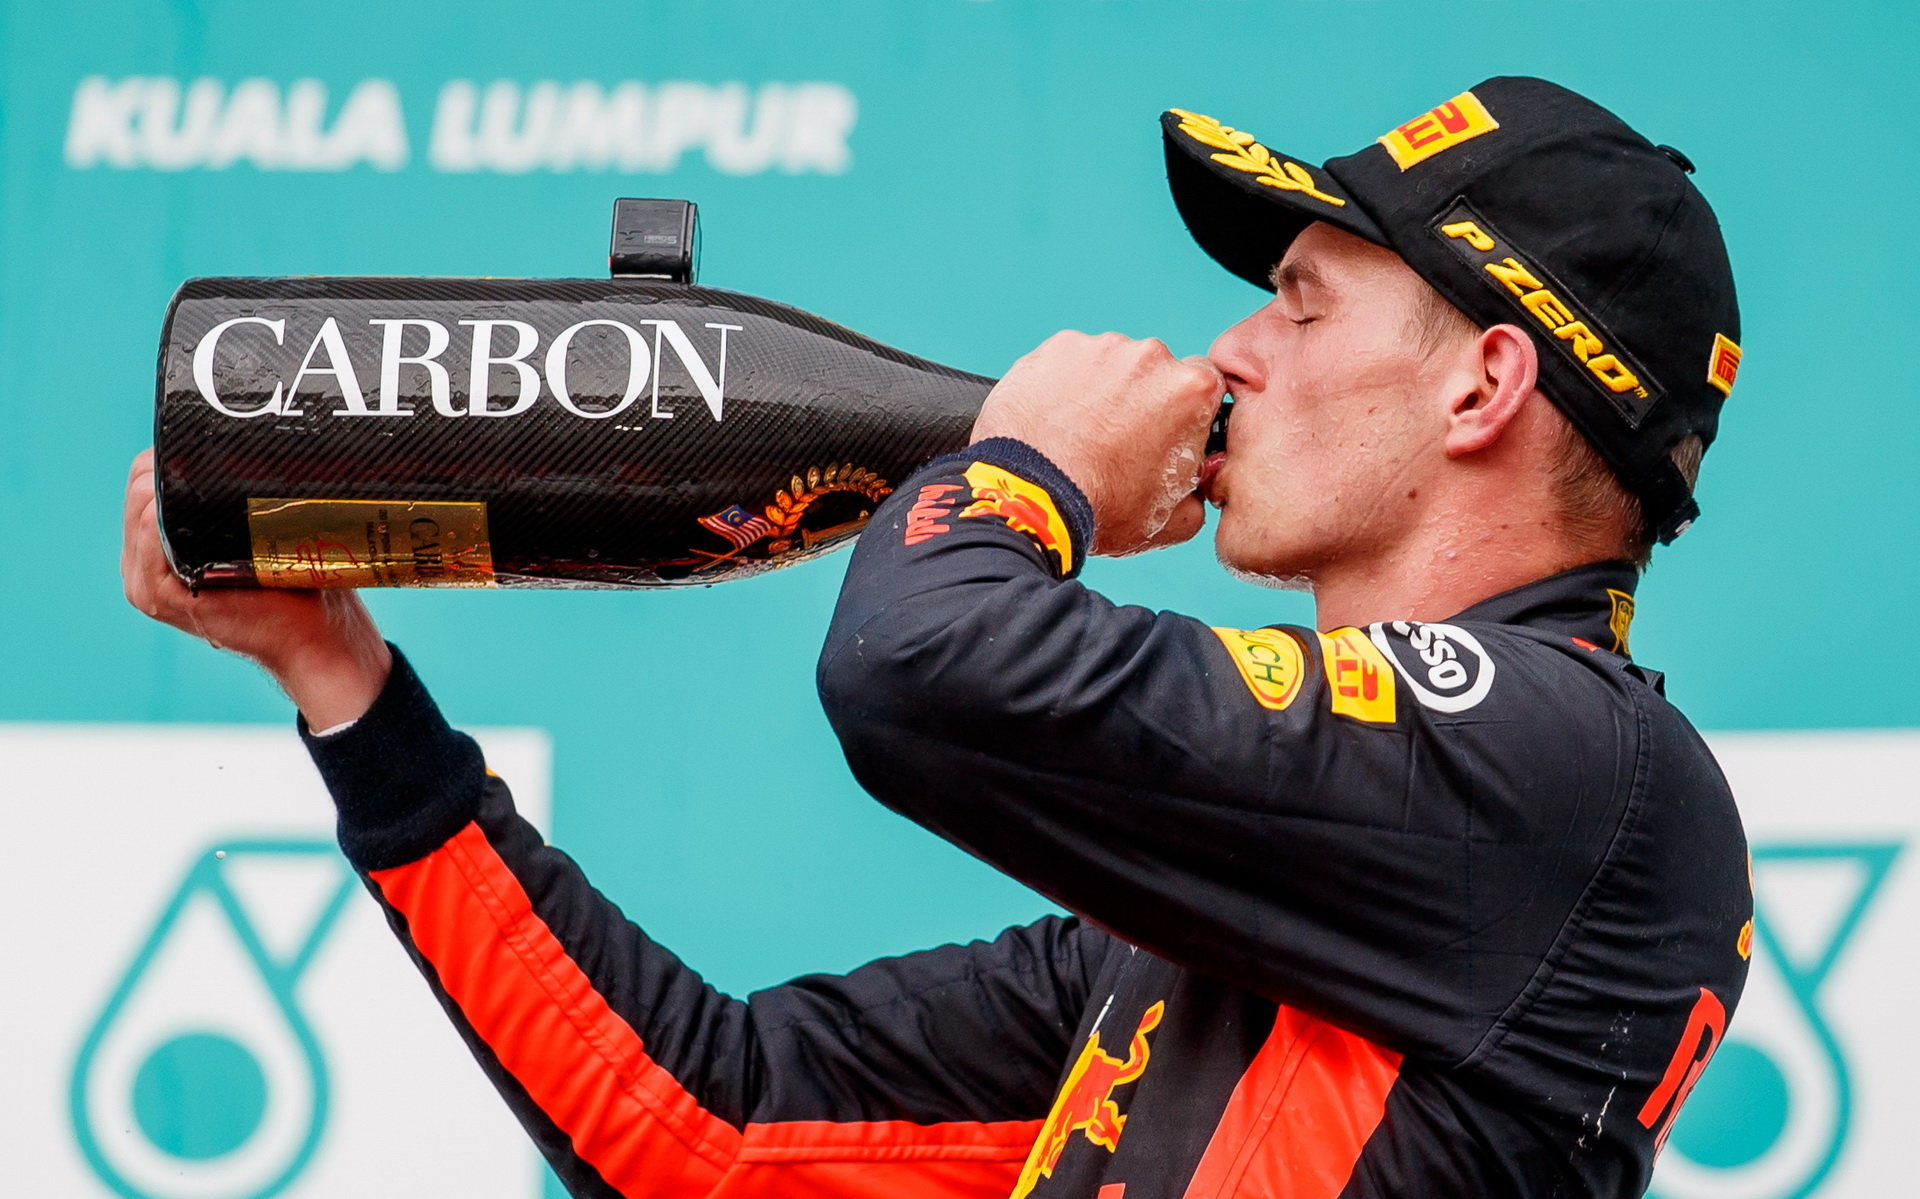 Max Verstappen se raduje z vítězství v závodě v Malajsii